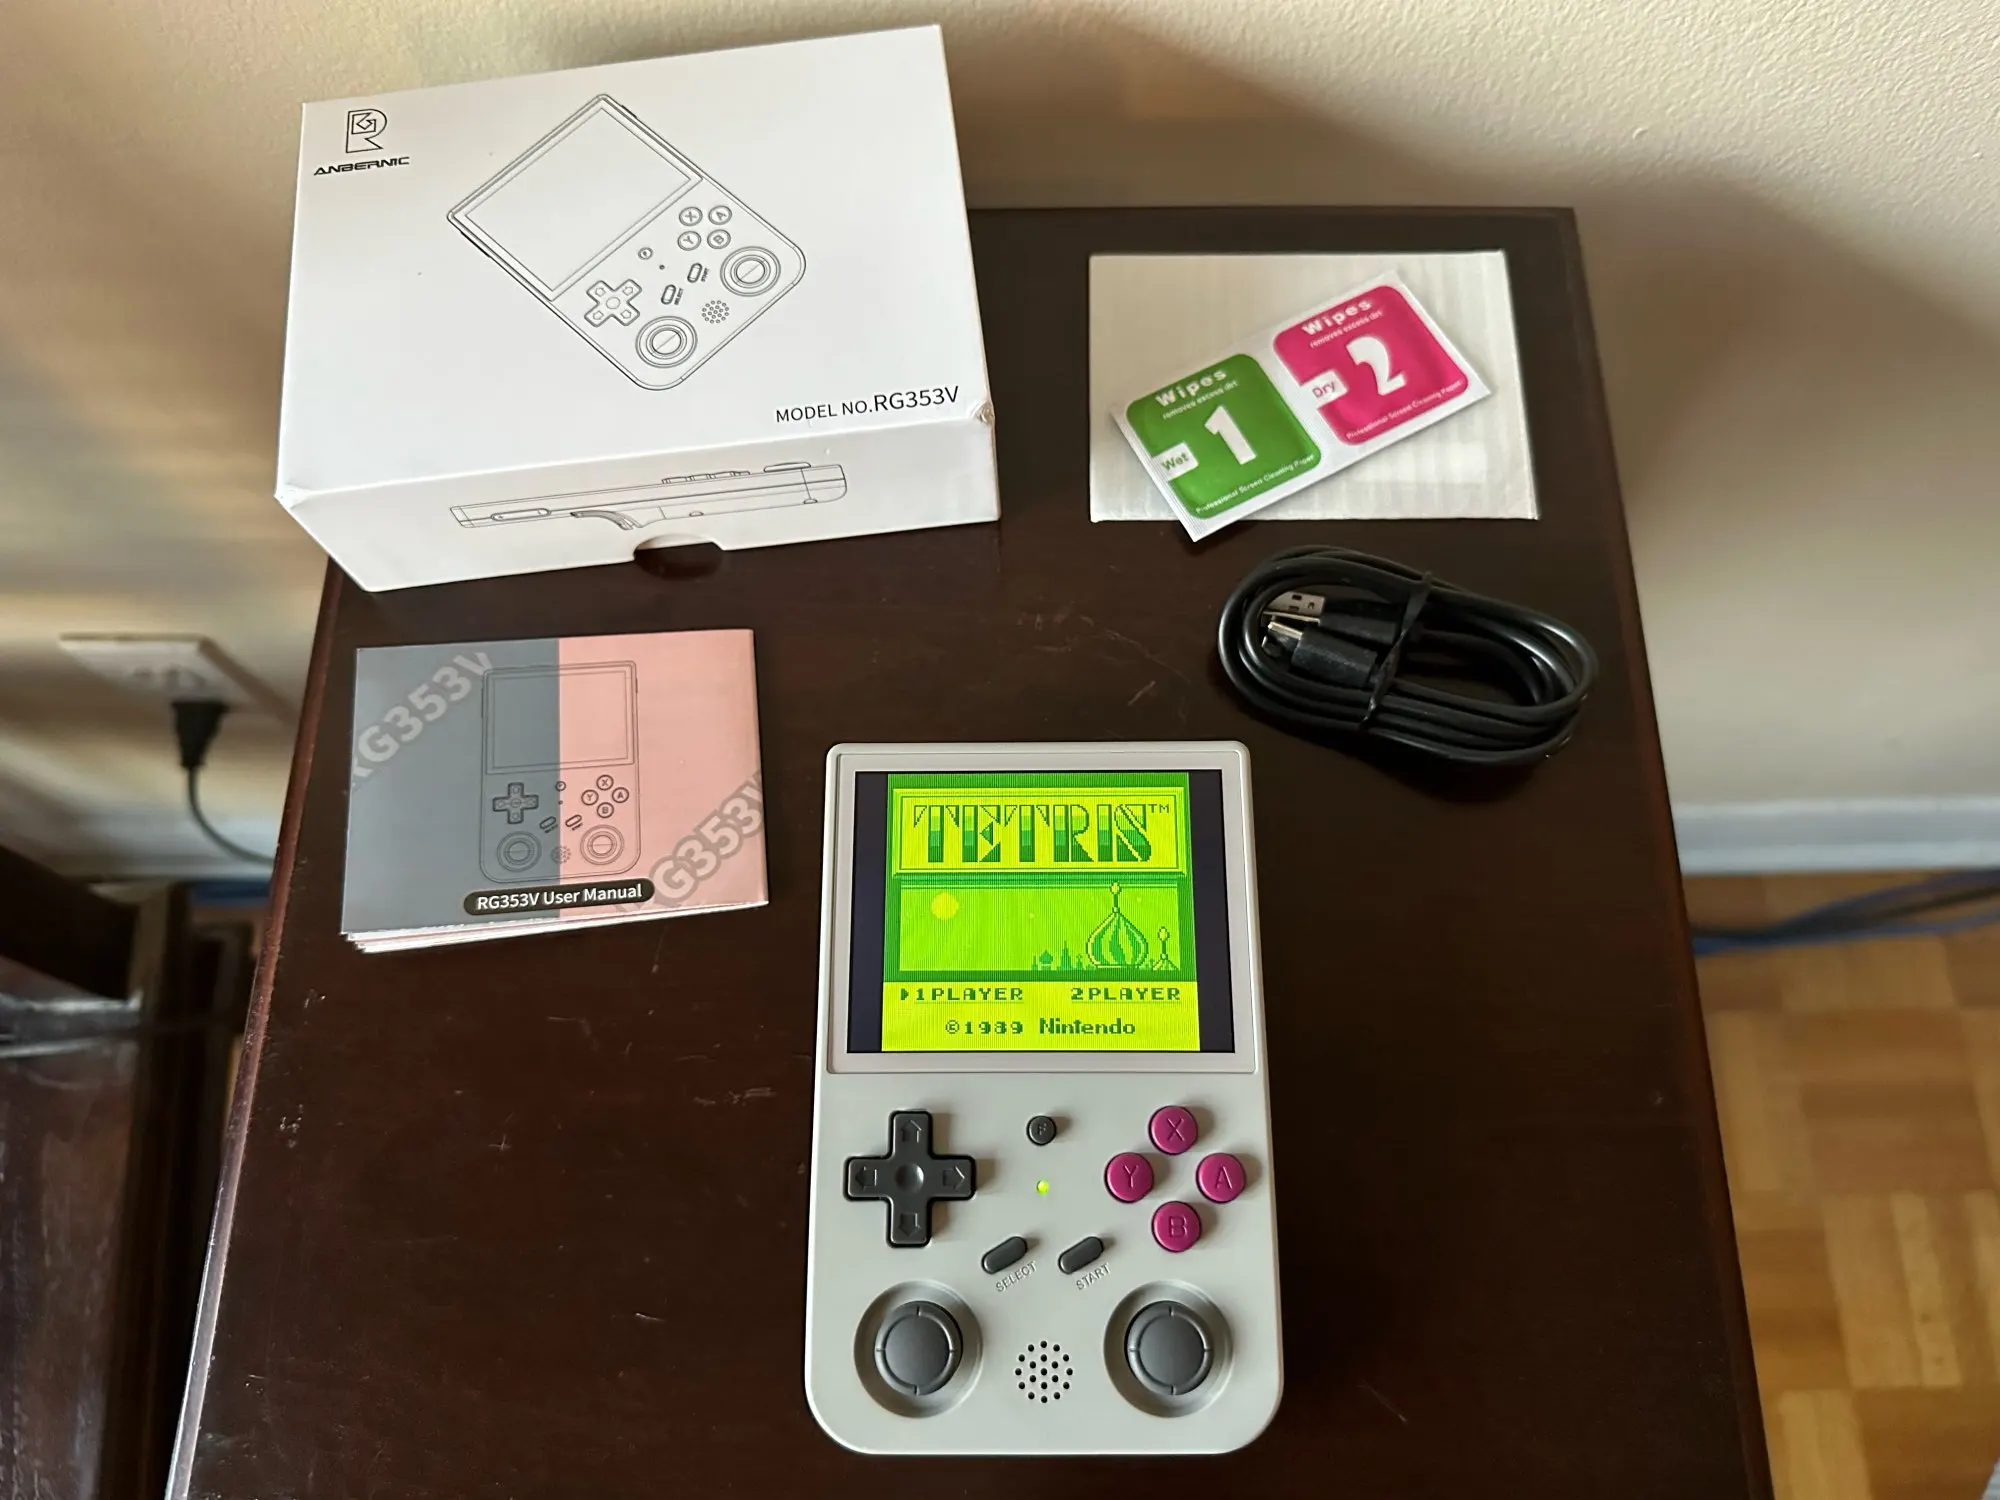 ANBERNIC – Console de jeu rétro portable RG353V RG353VS RK3566, 3.5 pouces, 640x480, émulateur, LINUX, cadeaux pour enfants photo review